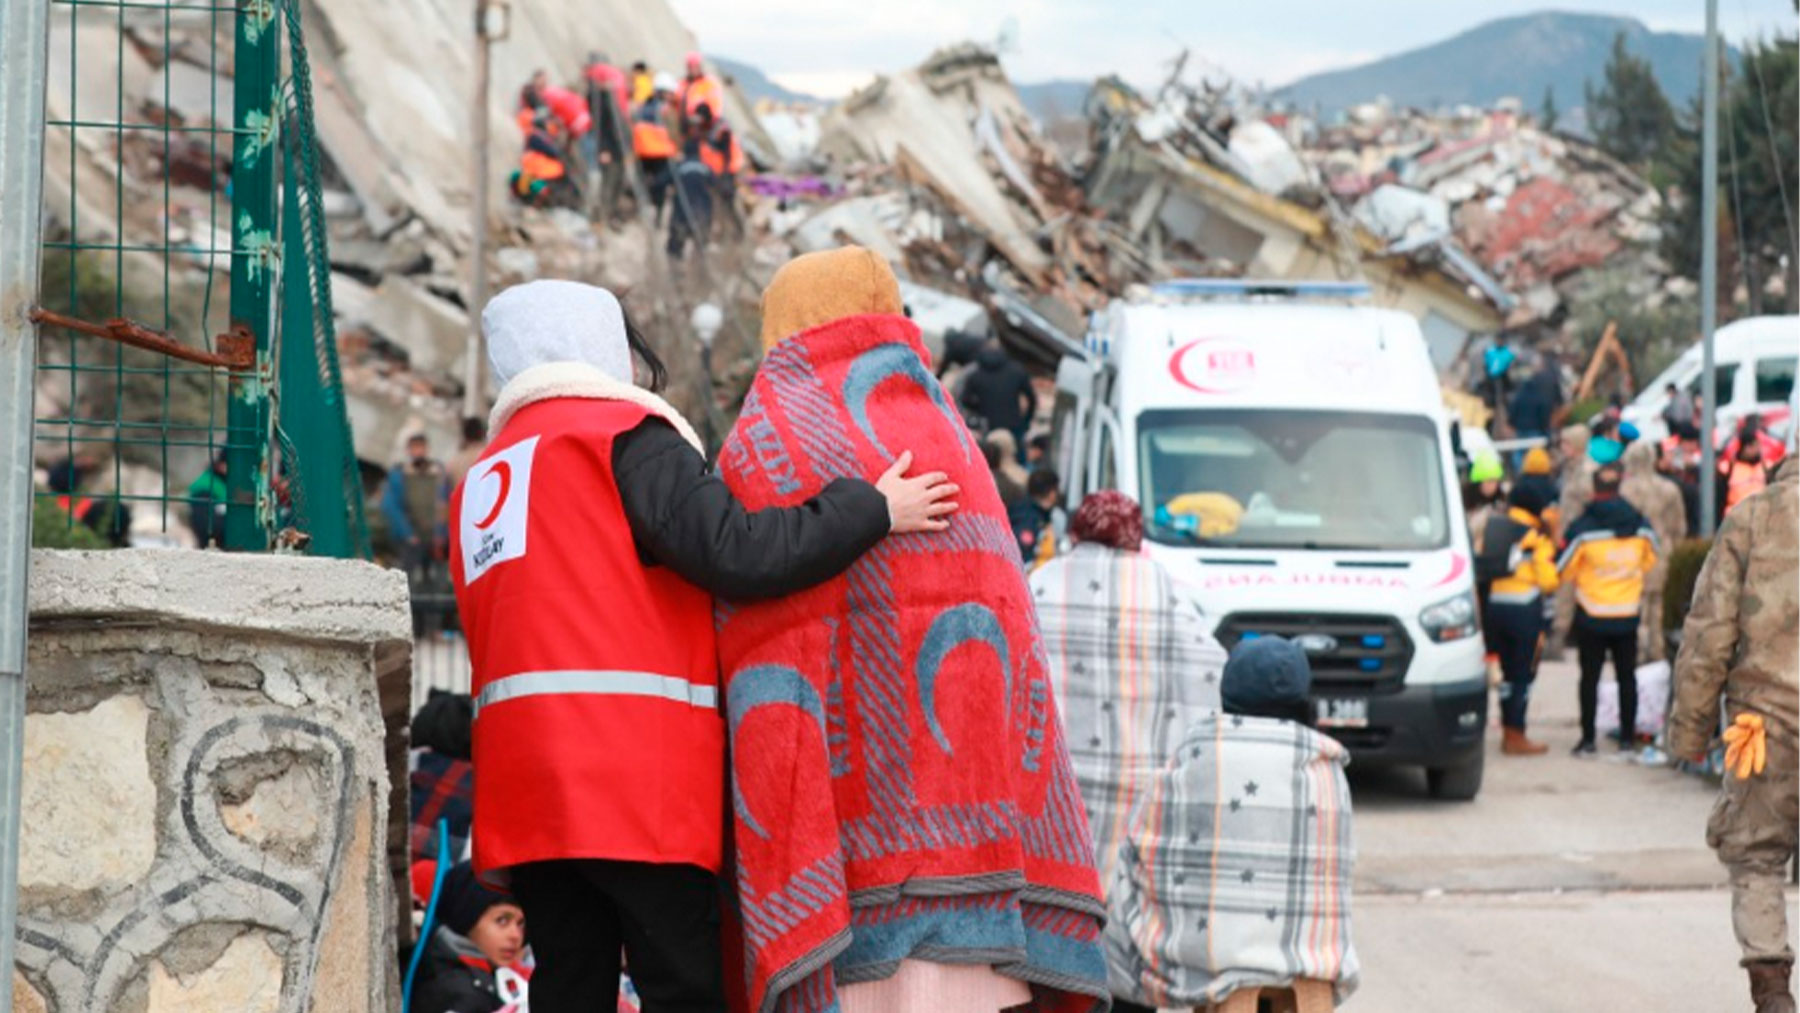 Una de las zonas afectadas, en una imagen de IFCR, Cruz Roja Internacional.